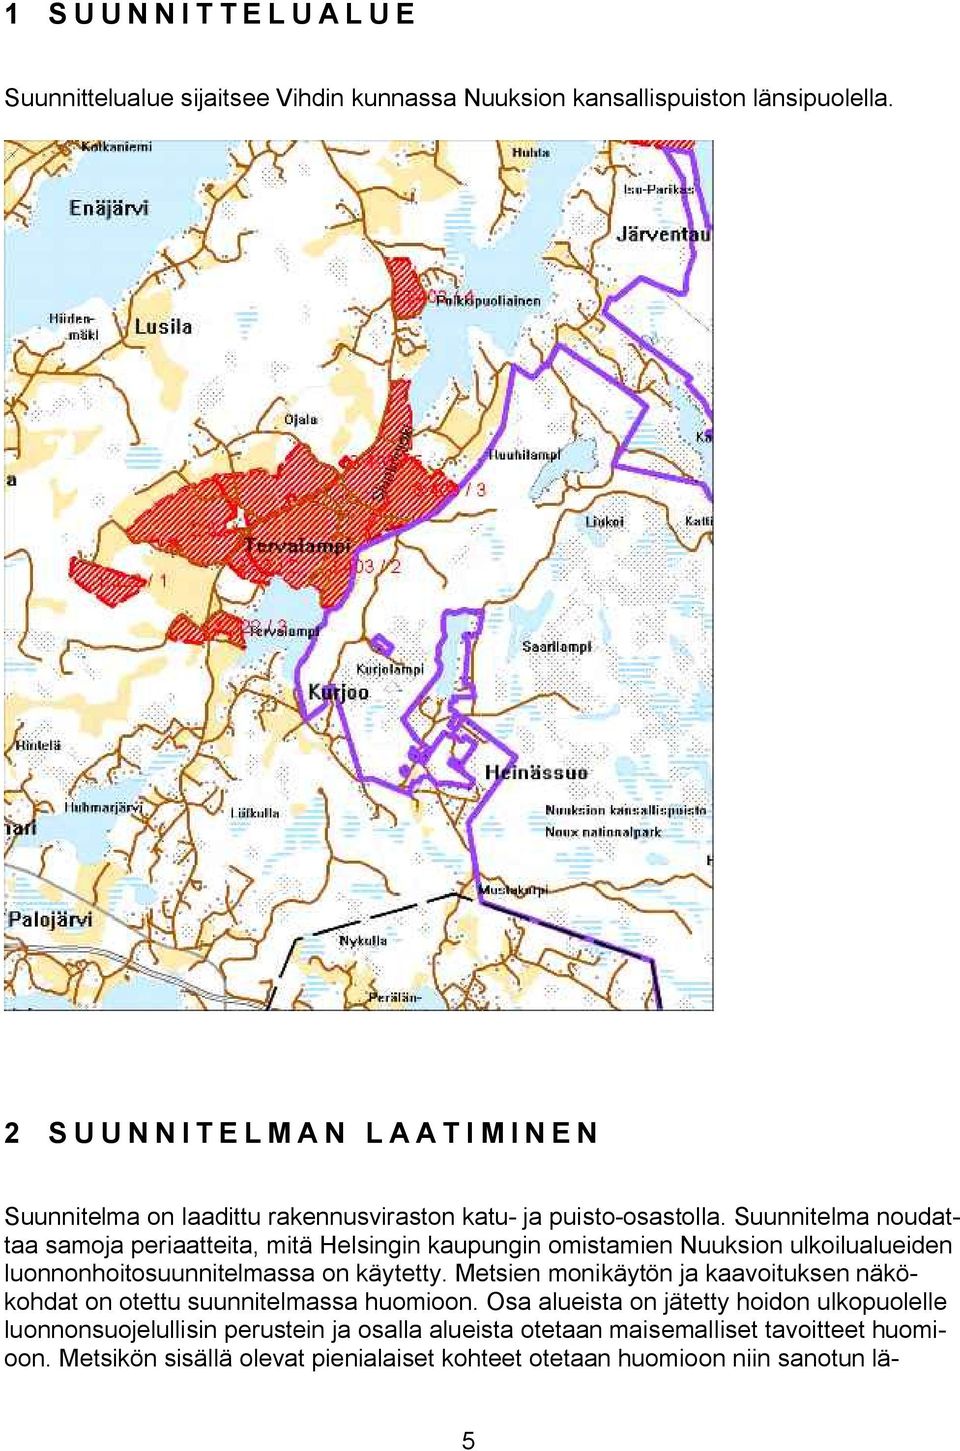 Suunnitela noudattaa saoja periaatteita, itä Helsingin kaupungin oistaien Nuuksion ulkoilualueiden luonnonhoitosuunnitelassa on käytetty.